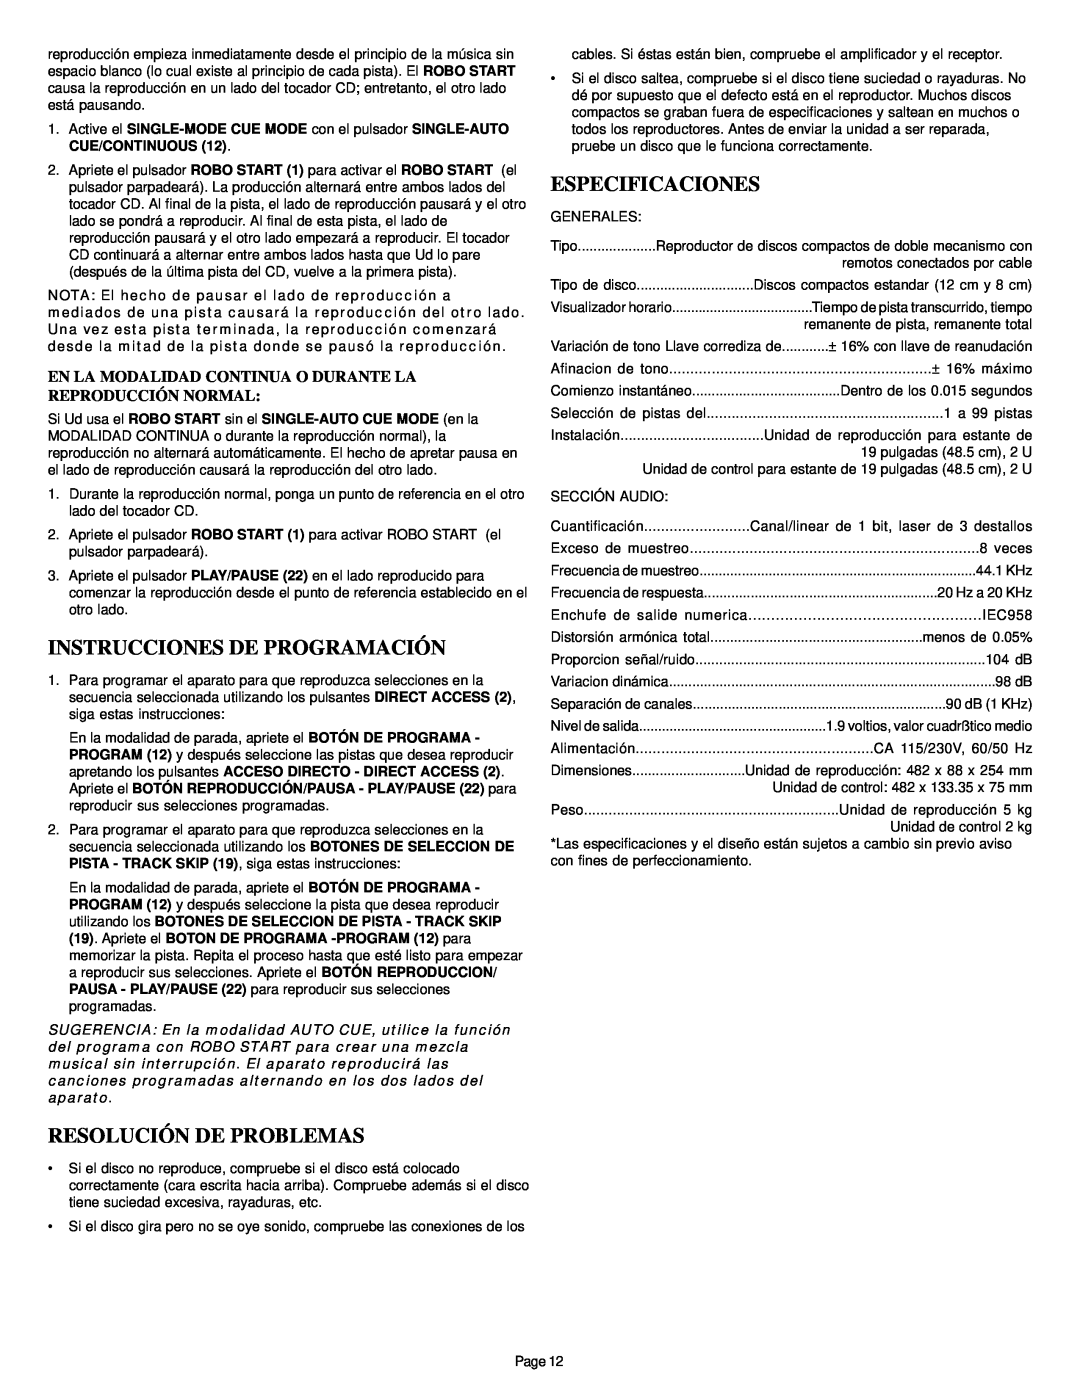 Gemini CDS-2000 manual Instrucciones De Programación, Resolución De Problemas, Especificaciones 